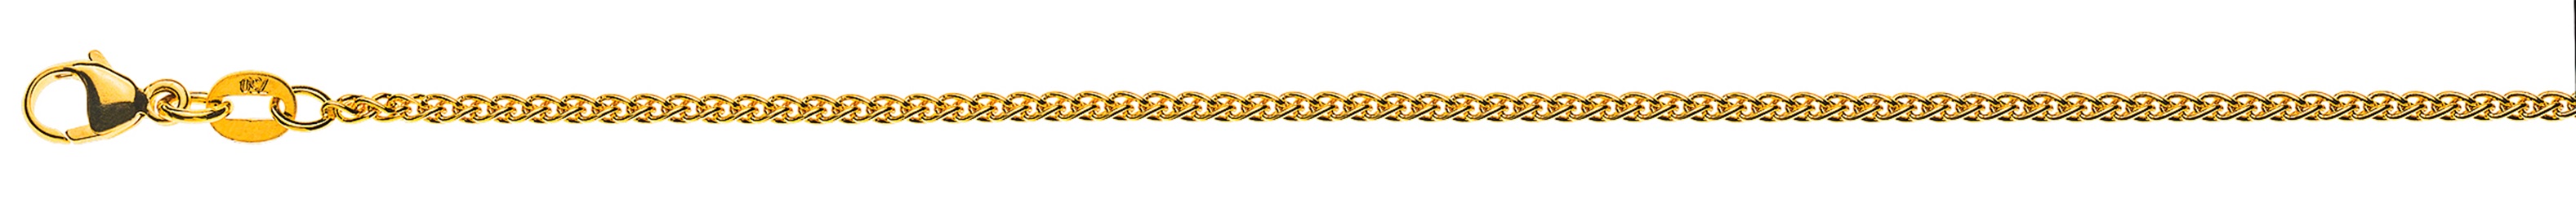 AURONOS Élégance Halskette Gelbgold 14K Zopfkette 42cm 1.6mm